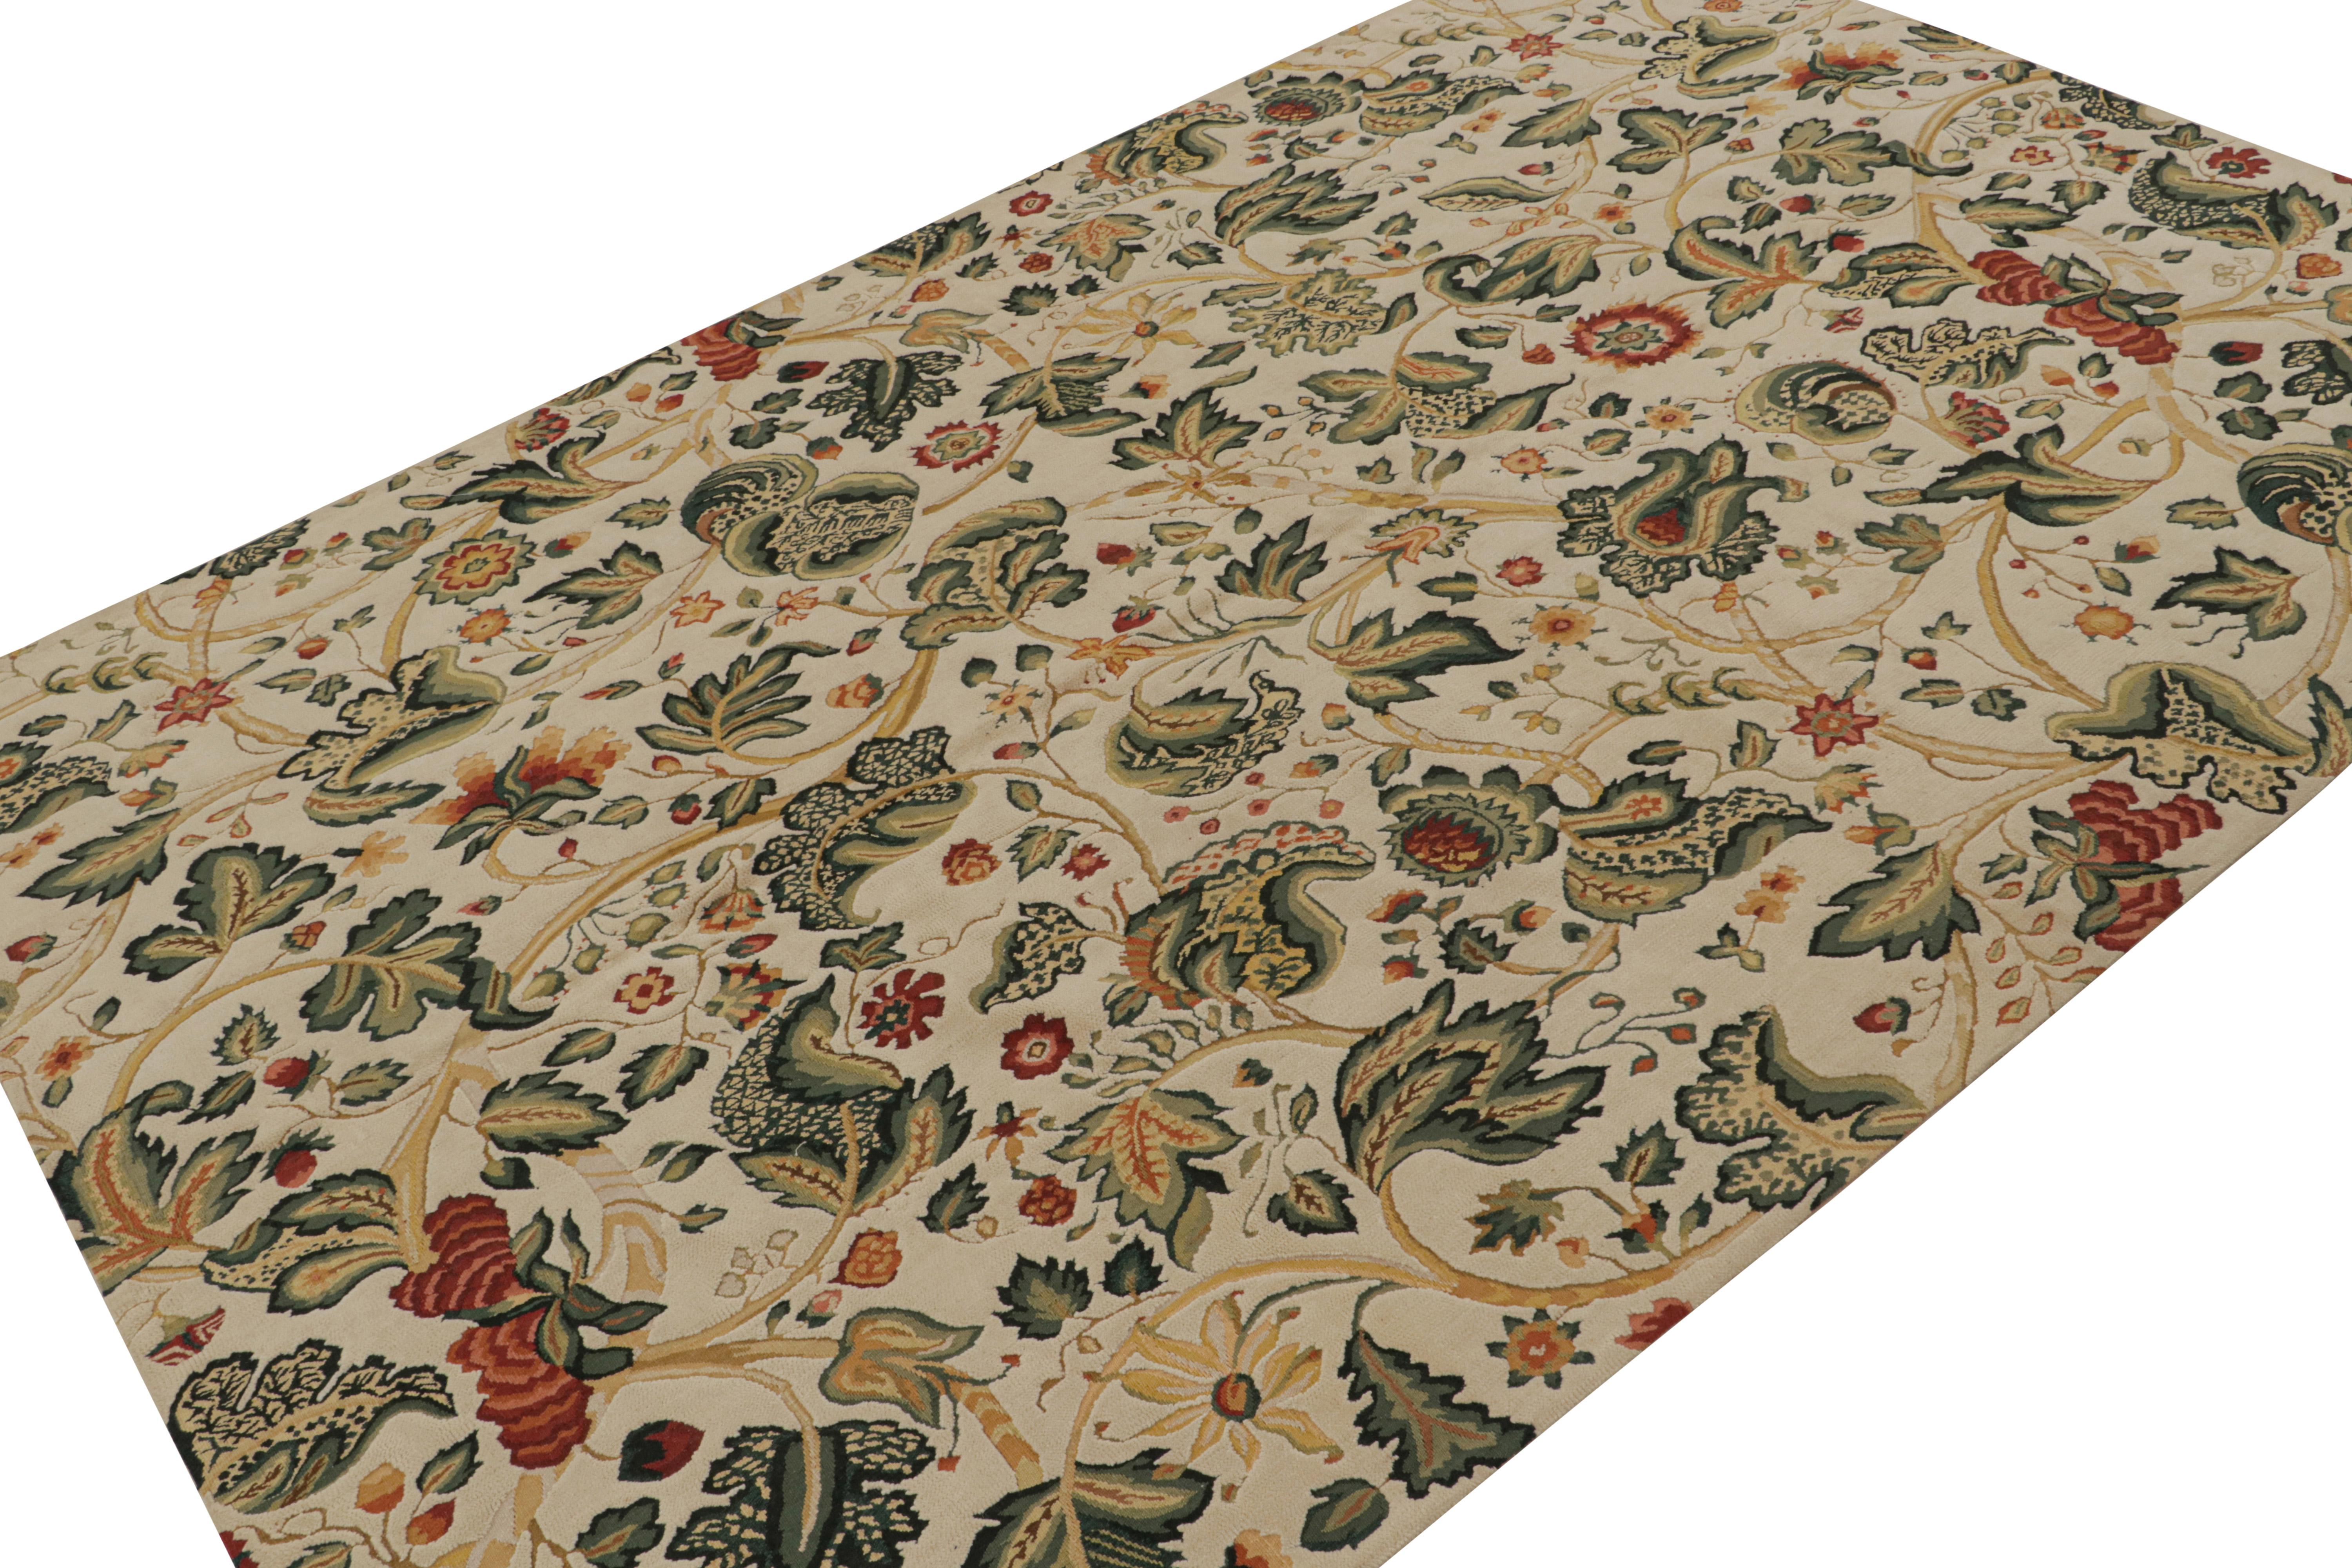 Dieser 6x9 große europäische Flachgewebe-Teppich aus Wolle wurde von englischen Tudor-Teppichen und Wandteppichen aus dem 18. Jahrhundert inspiriert. Das Design besteht aus floralen Mustern in Grün, Rot, Gold und blaugrünen Akzenten auf dem gesamten